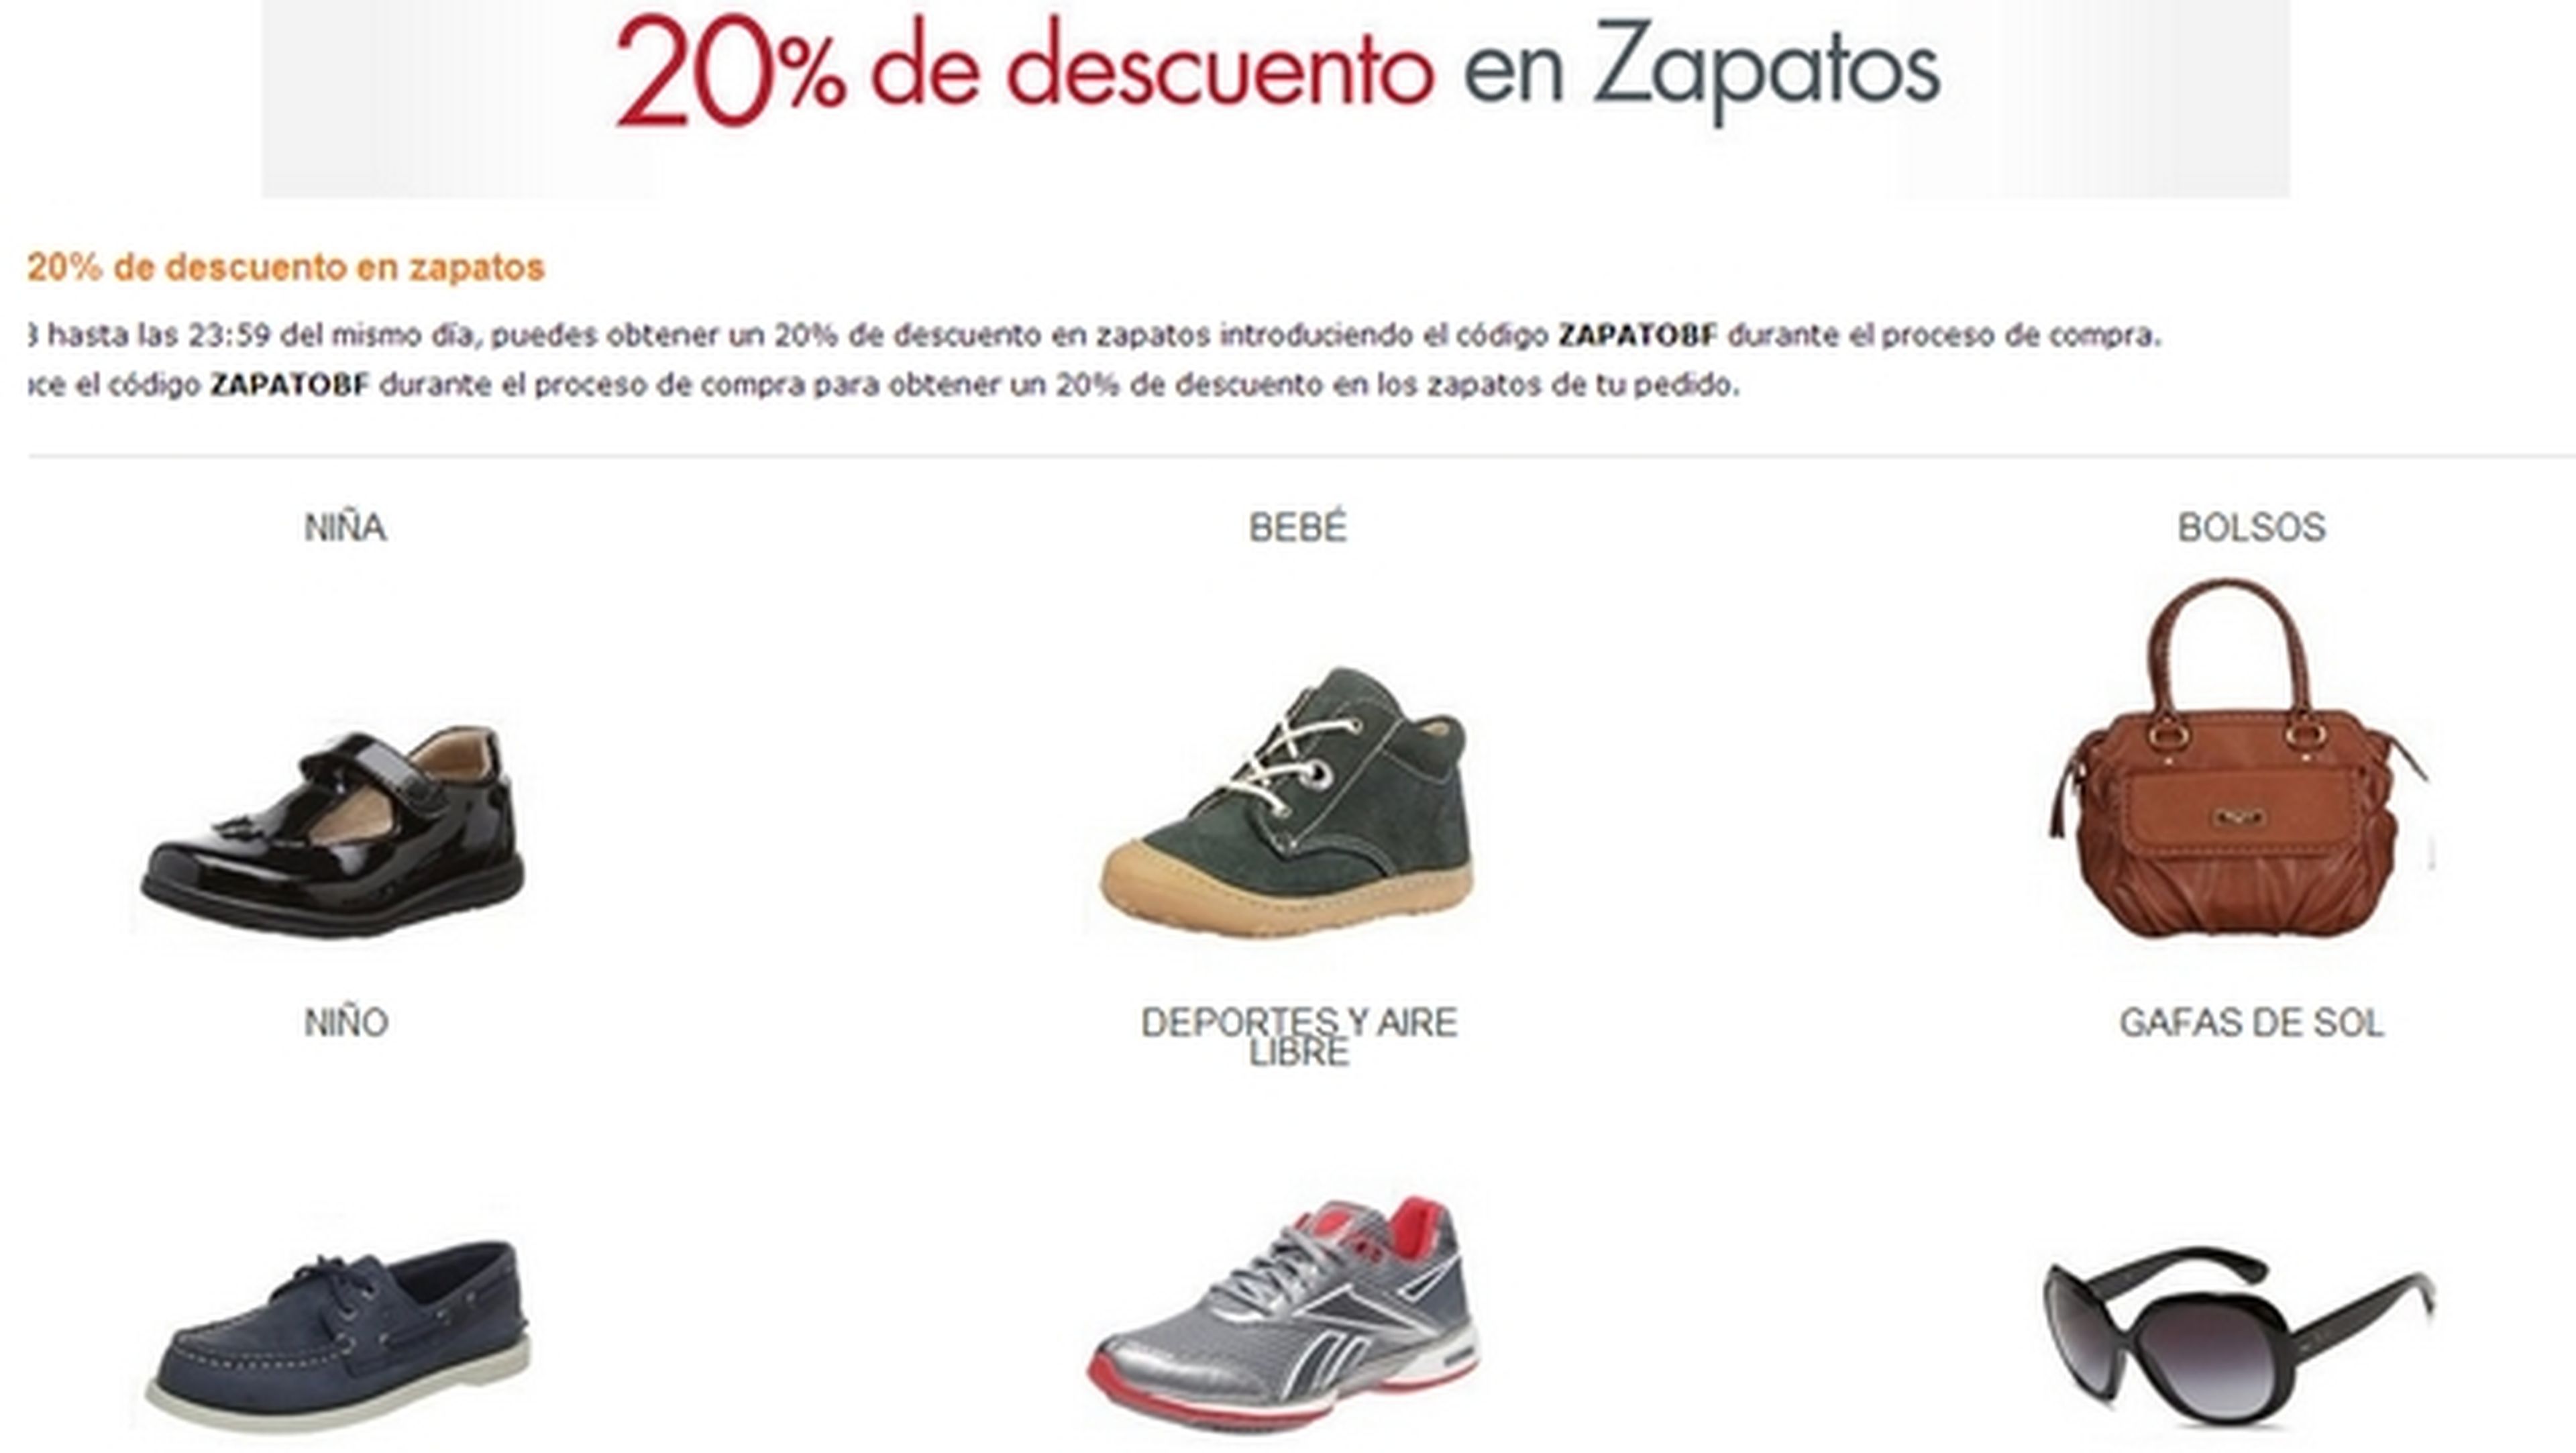 20 % de descuento en Zapatos en Amazon durante el Black Friday